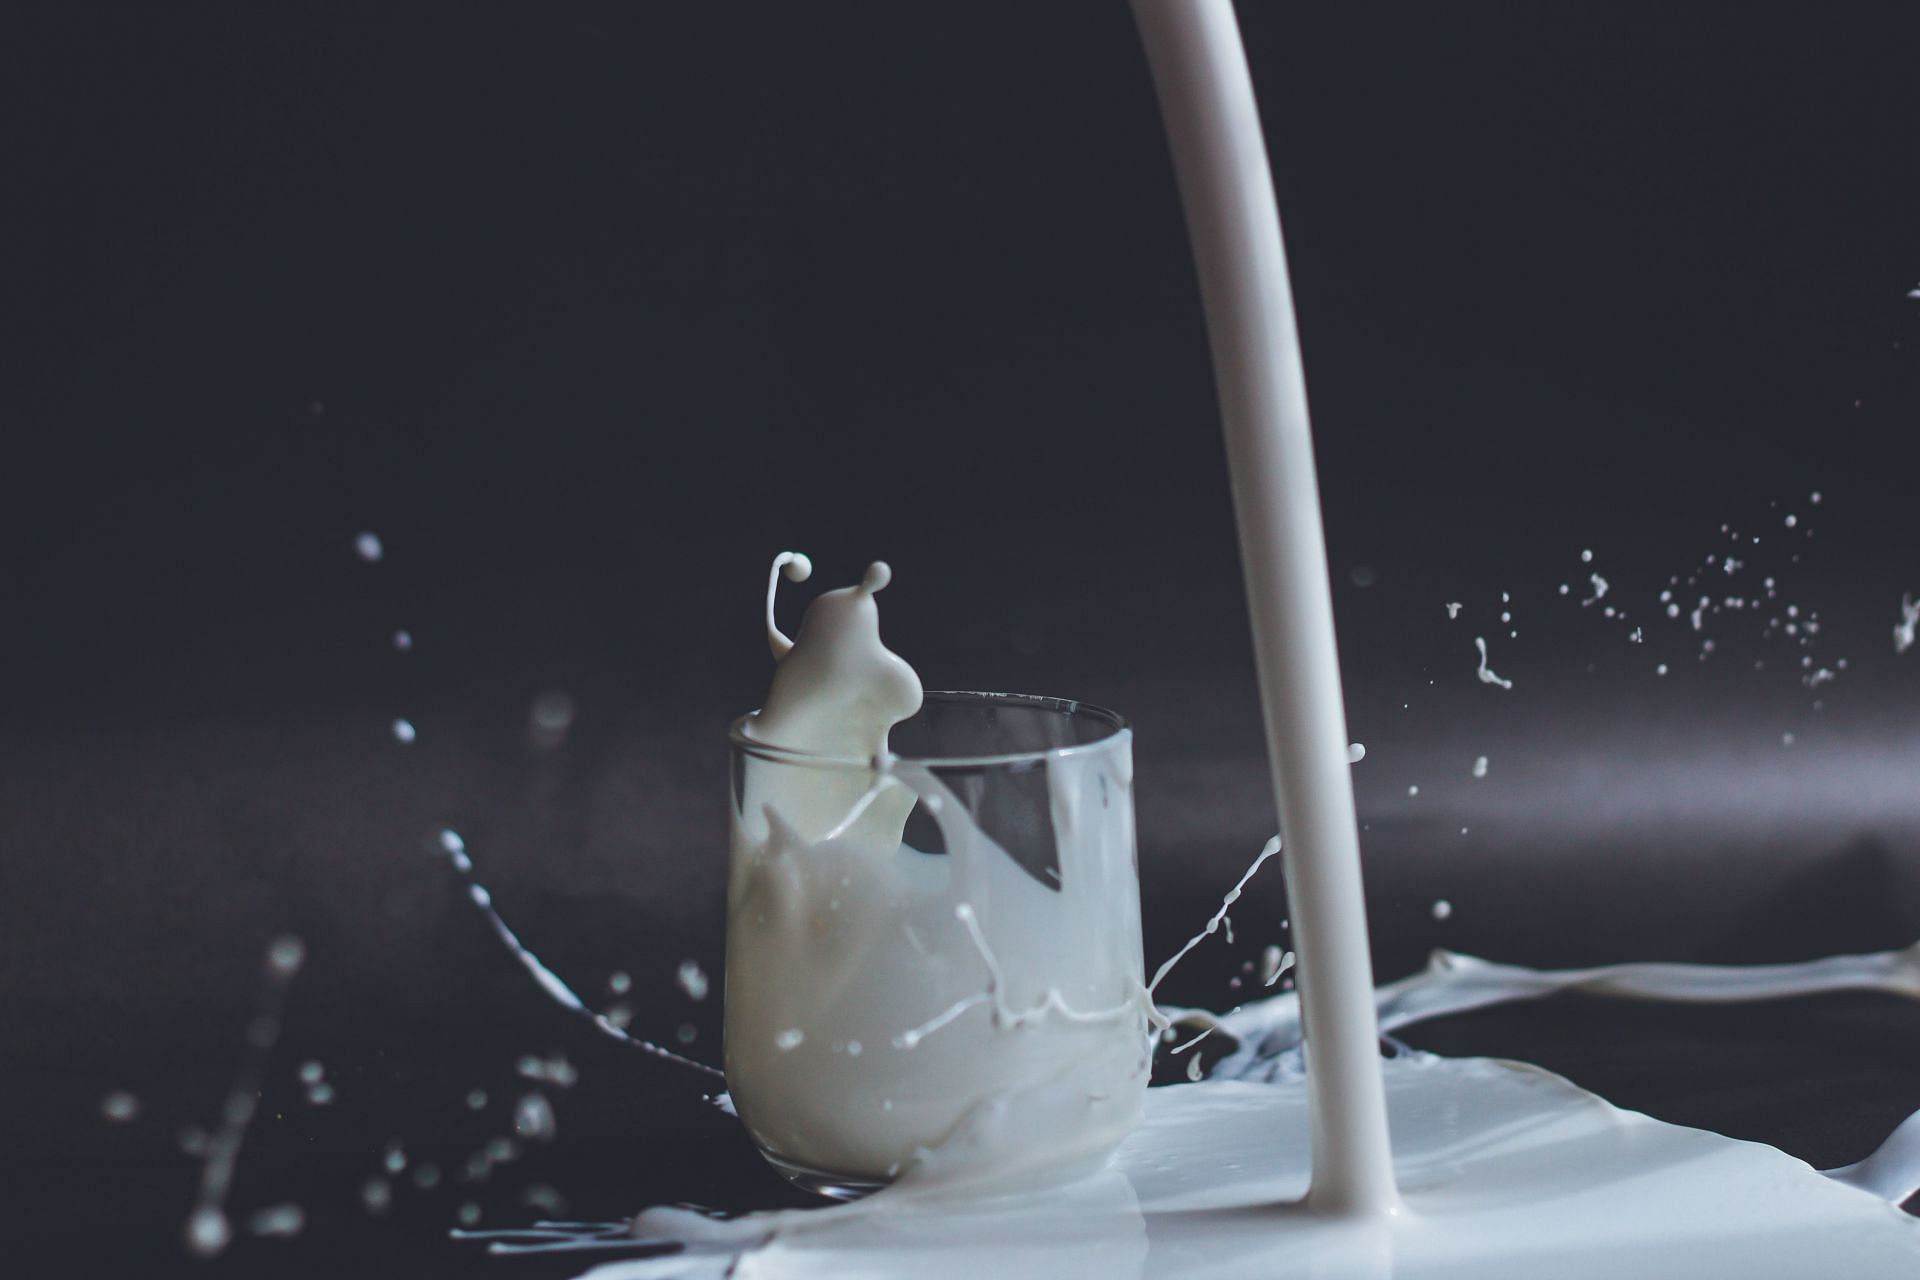 Milk can be included in low fiber diet for colonoscopy. (Image via Unsplash/Anita Jankovic)